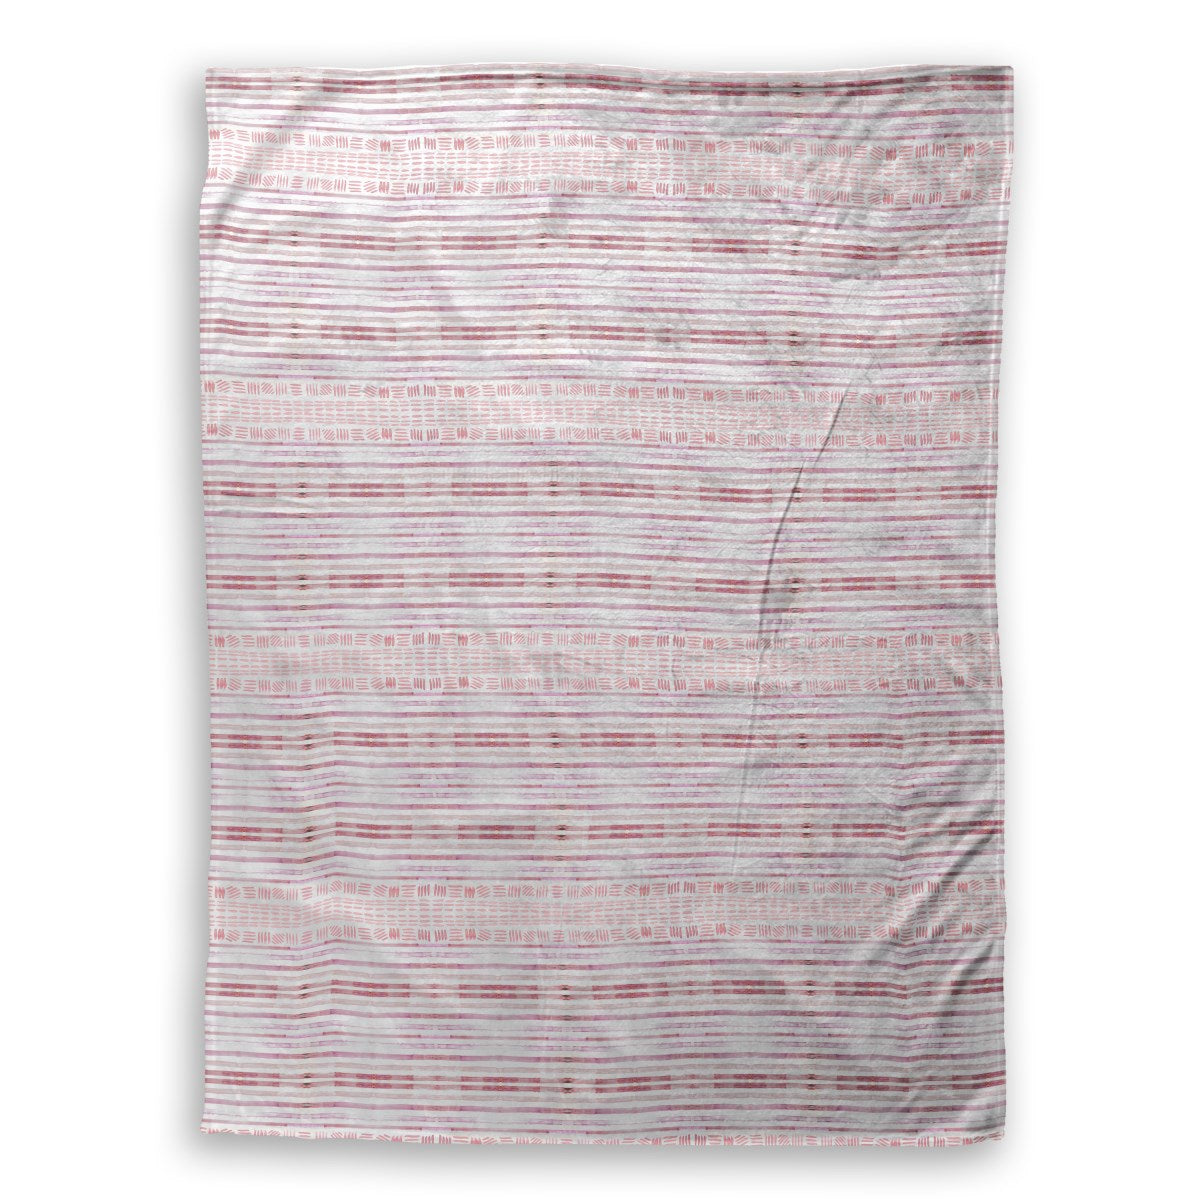 Sunset Stripe Plush Throw Blanket - large 60x80